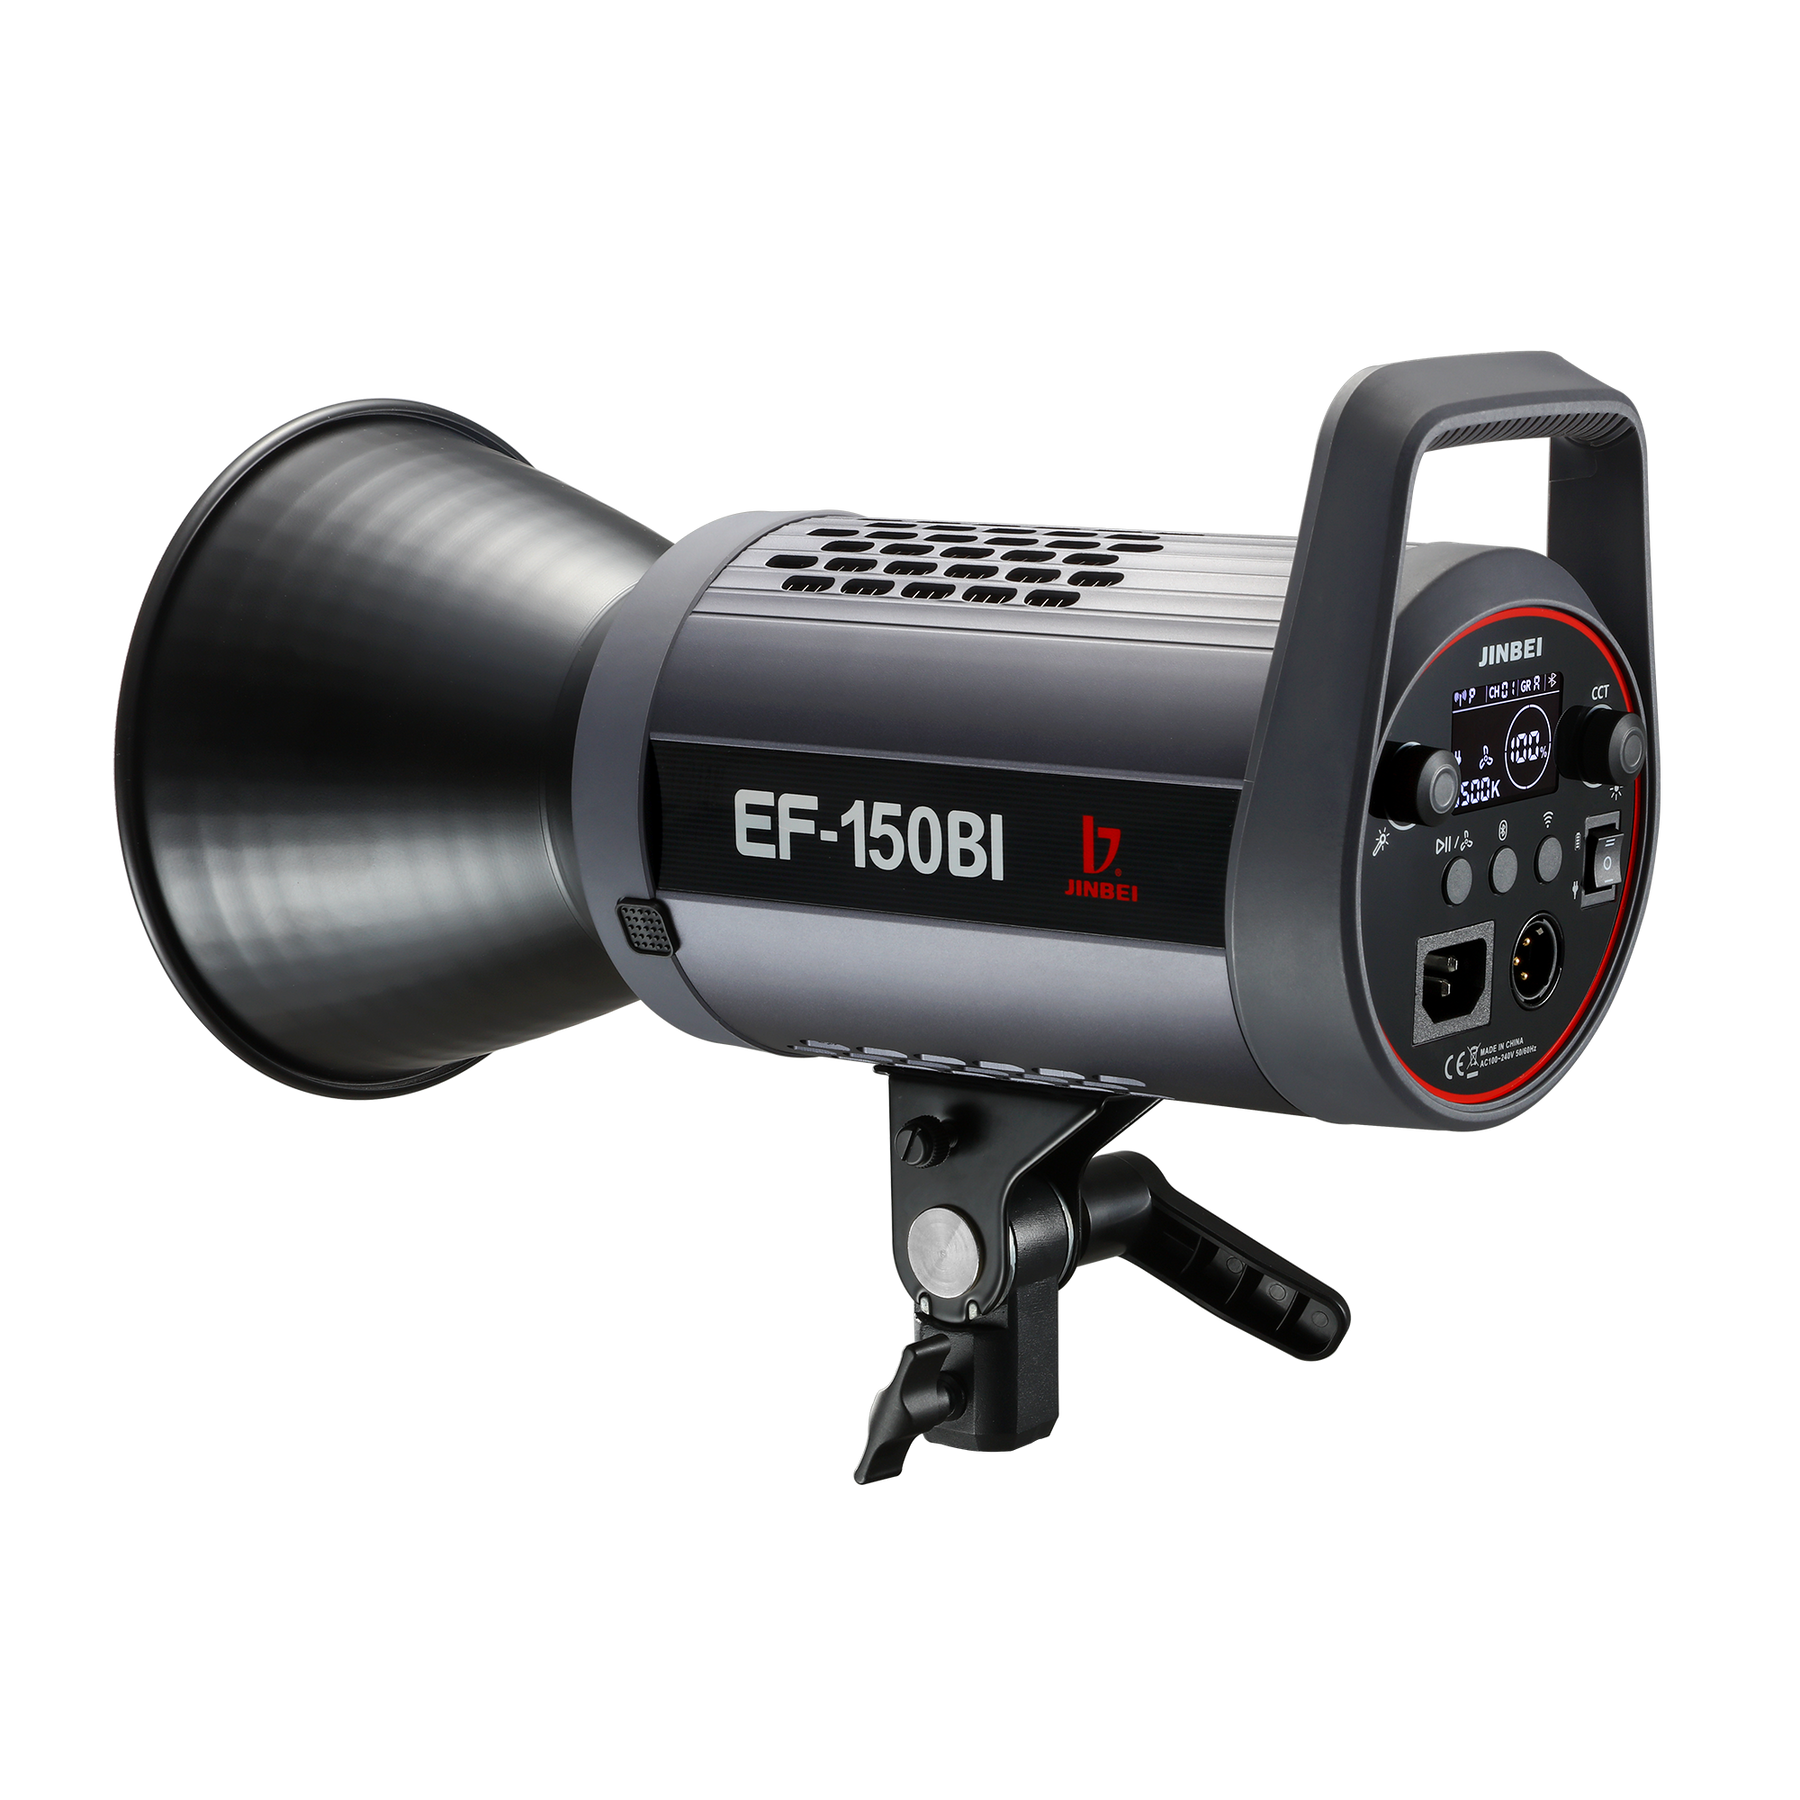 EF-150Bi LED-Dauerlicht